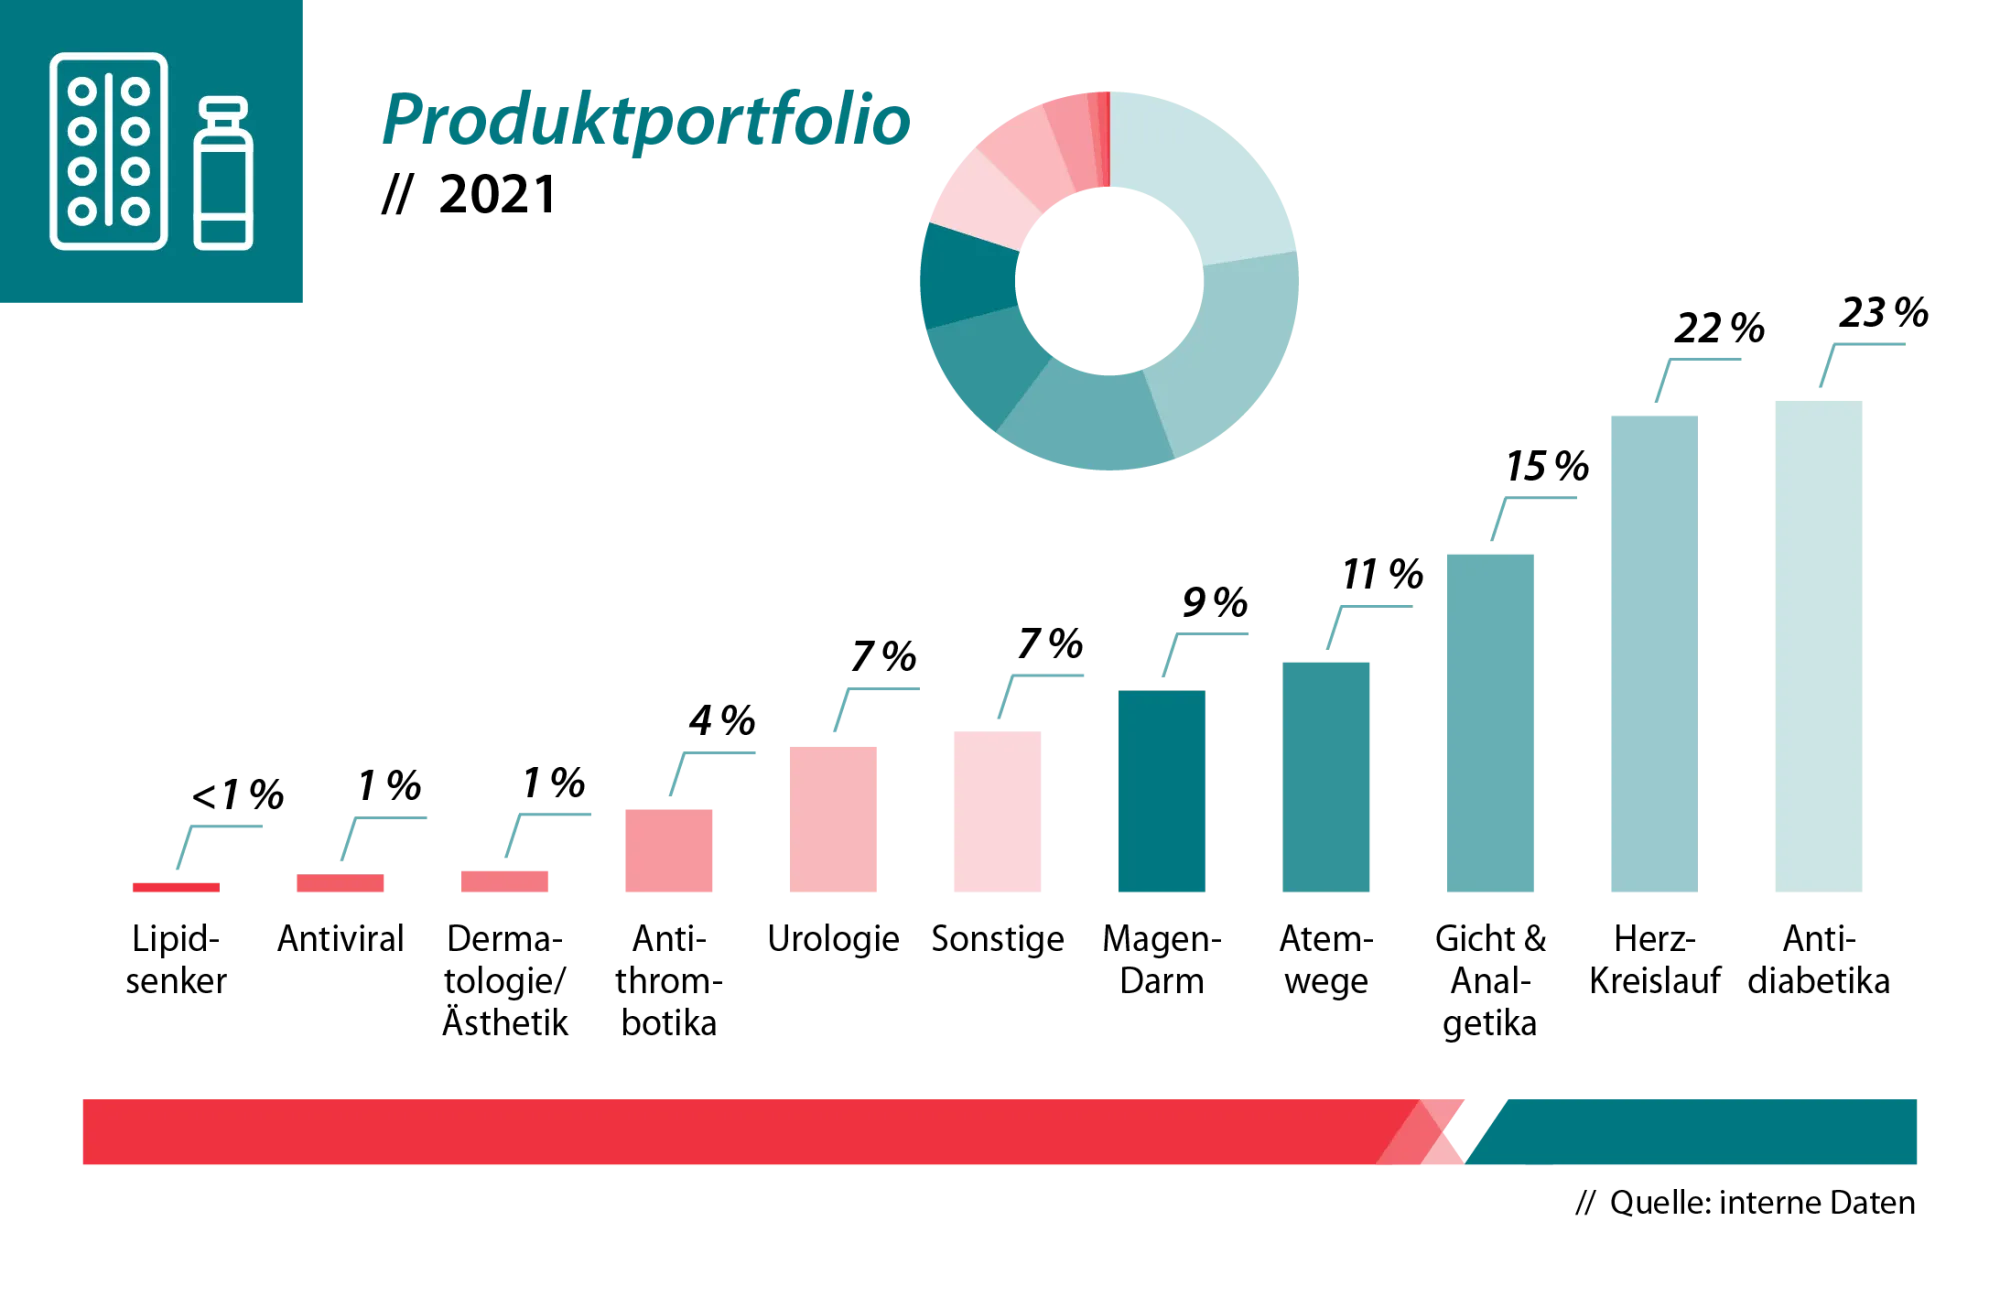 Produktportfolio in Deutschland 2021